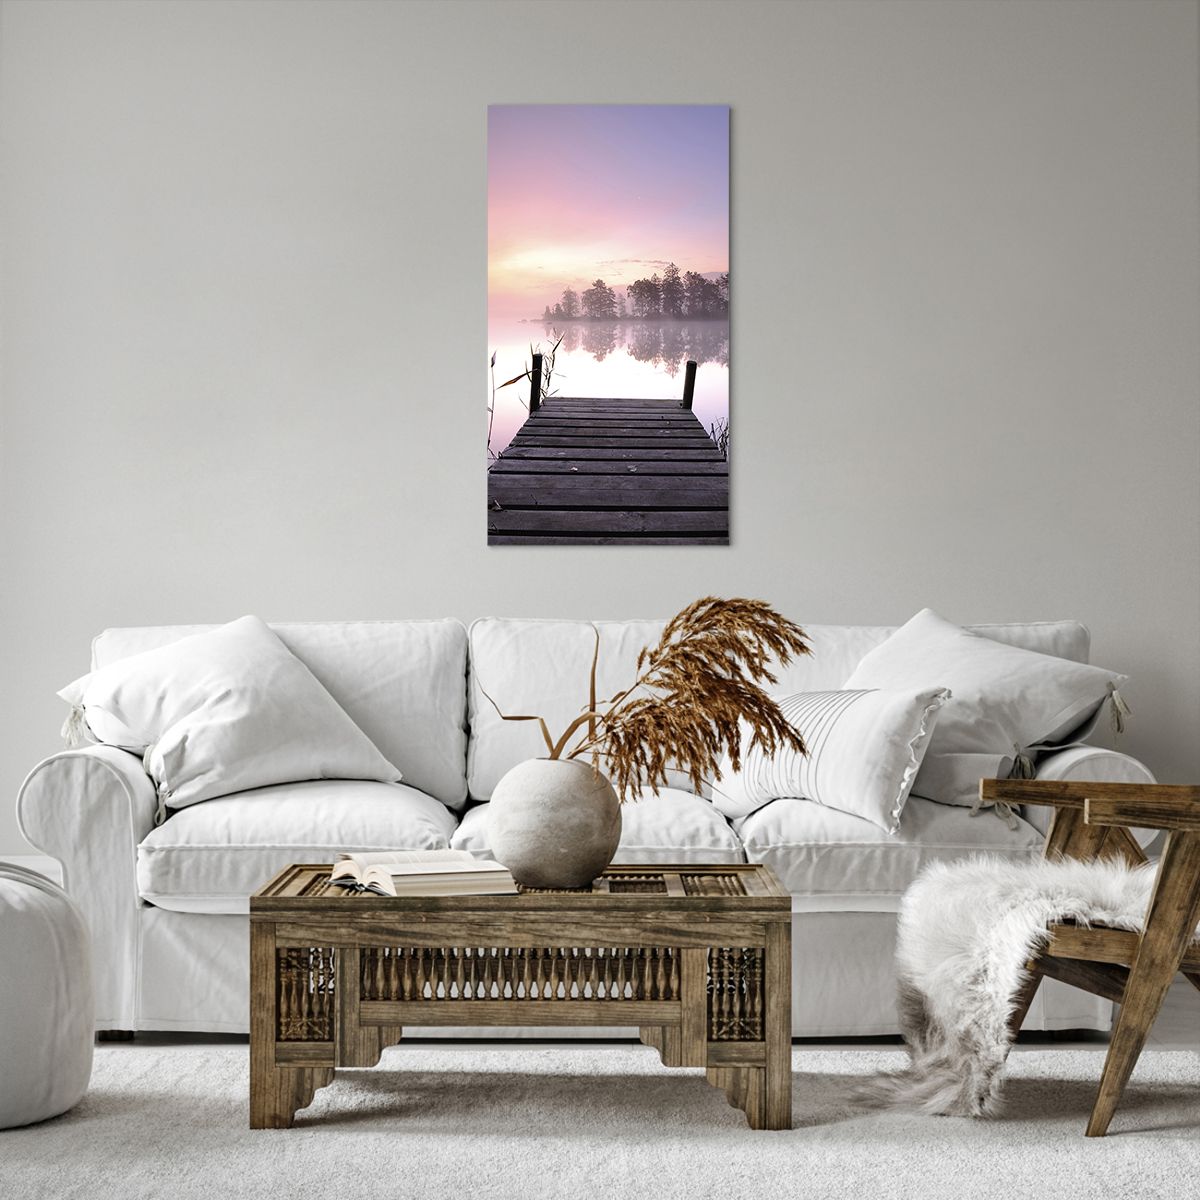 Bild auf Leinwand Landschaft, Bild auf Leinwand Sonnenaufgang, Bild auf Leinwand See, Bild auf Leinwand Holzbrücke, Bild auf Leinwand Natur